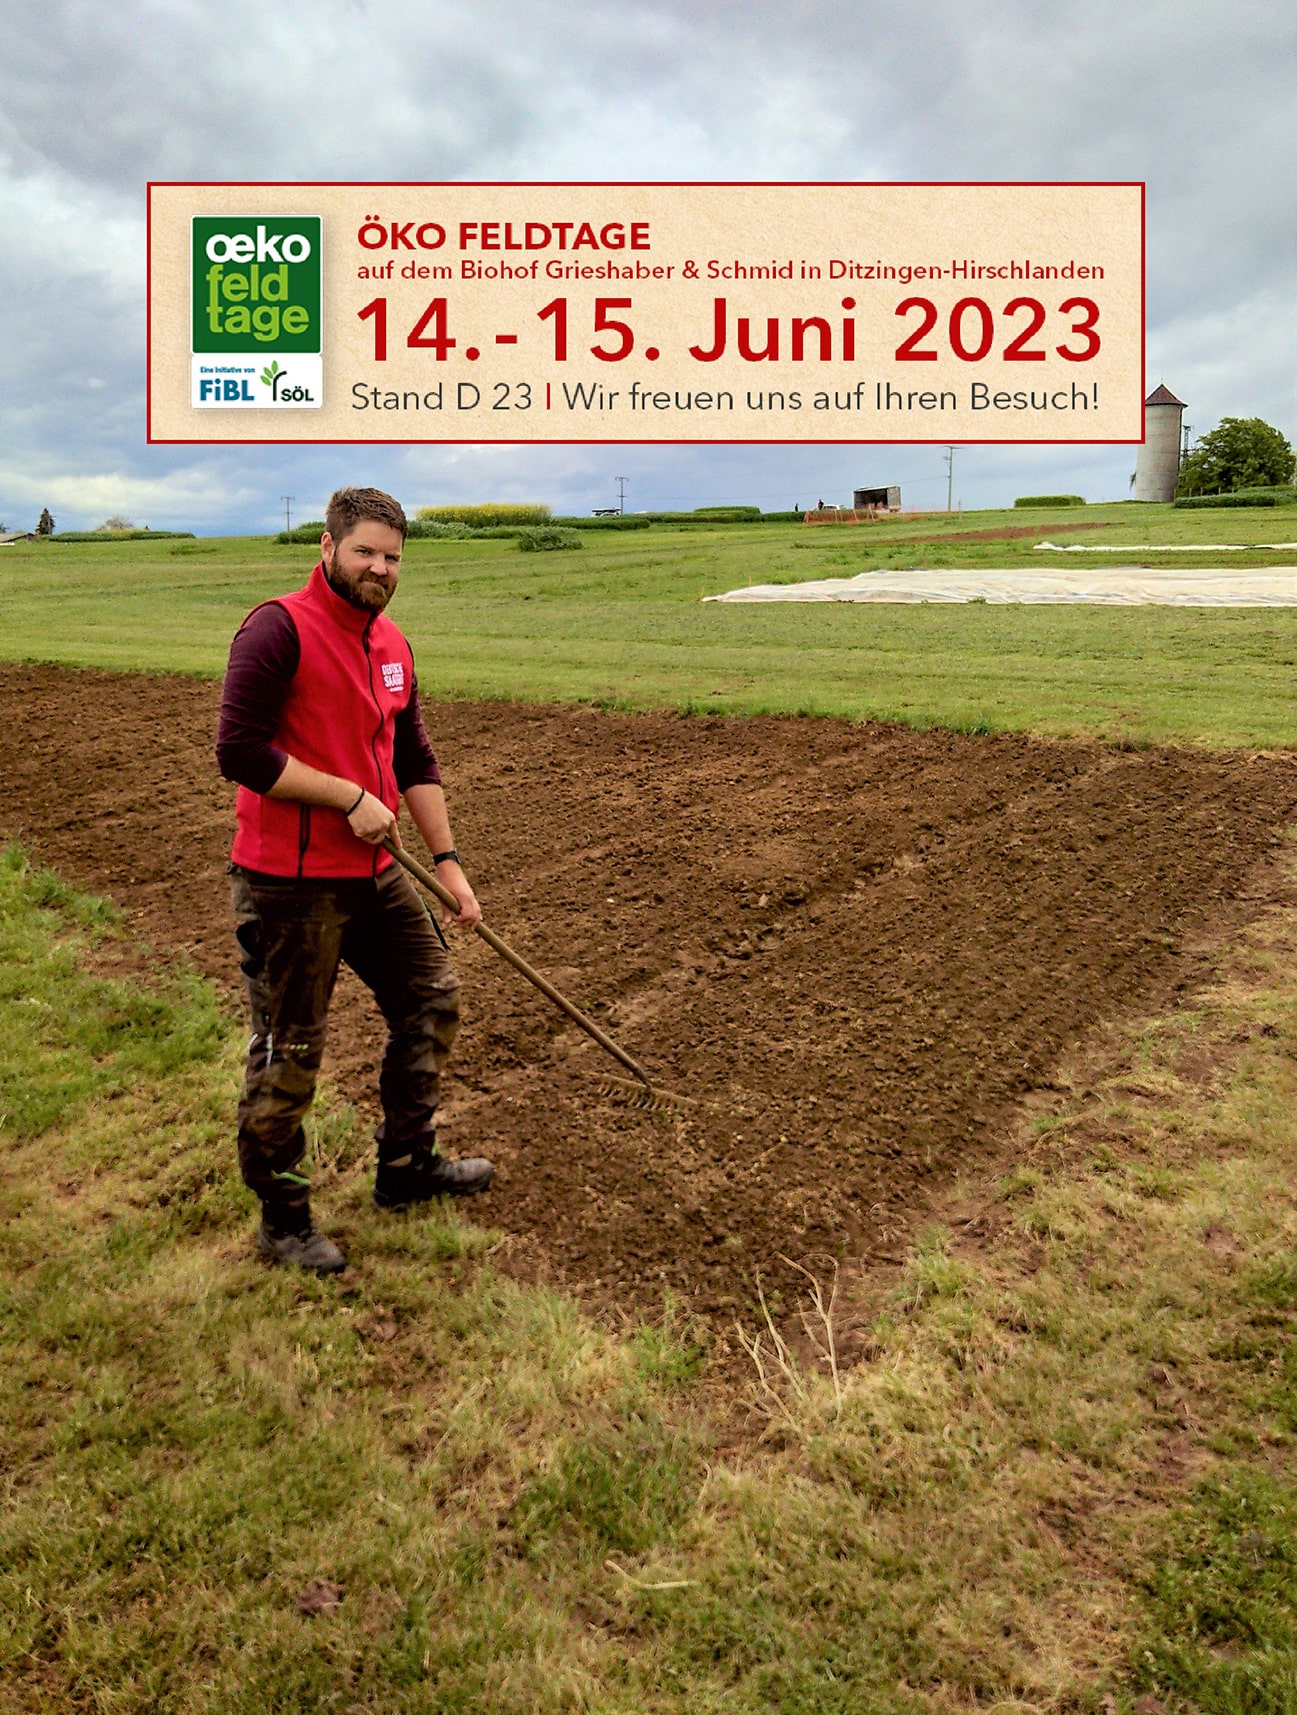 Besuchen Sie uns auf den Öko-Feldtagen vom 14. bis 15. Juni 2023! Überzeugen Sie sich auf dem Stand D 23 von unserem Portfolio.